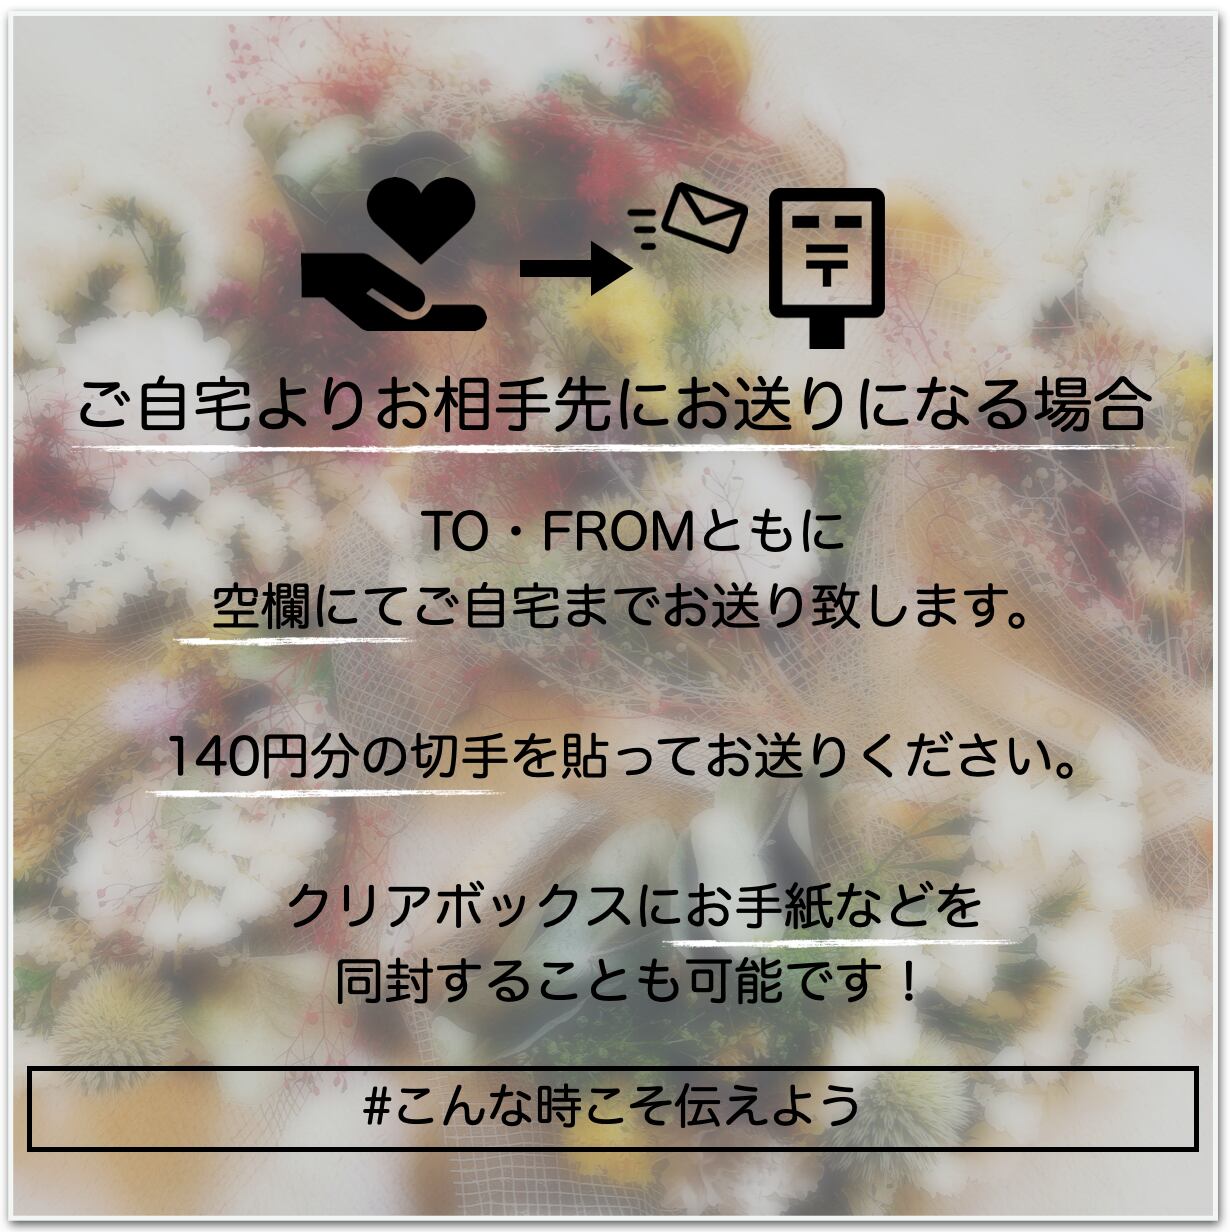 【再入荷】Post Perfume Flower